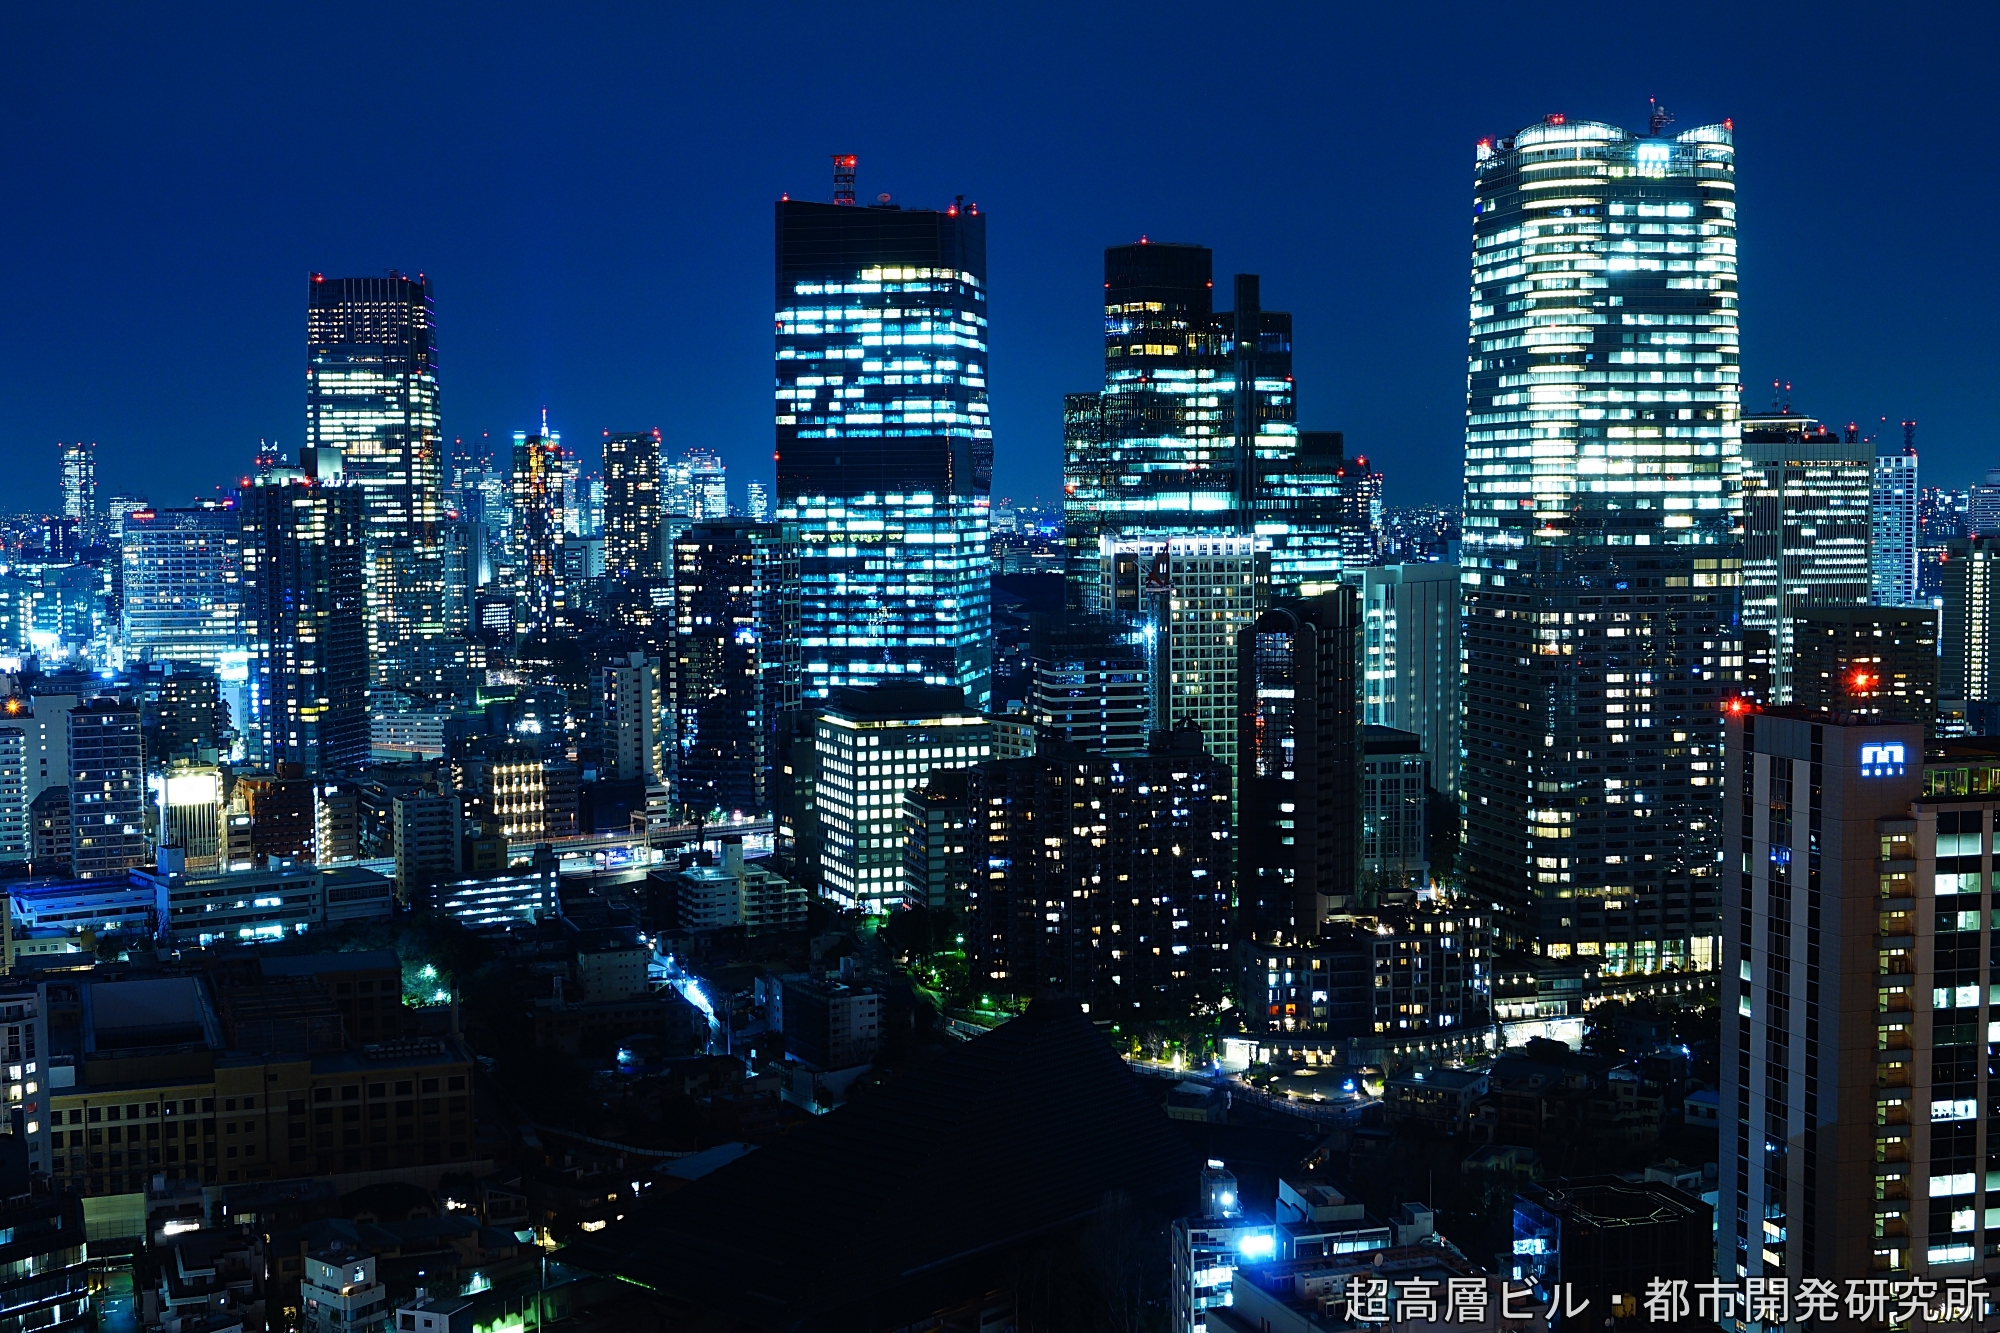 東京 夜景観 トウキョウ ヤケミ 東京タワーから見た近未来的な幻想的超高層ビル群の夜景 風景写真